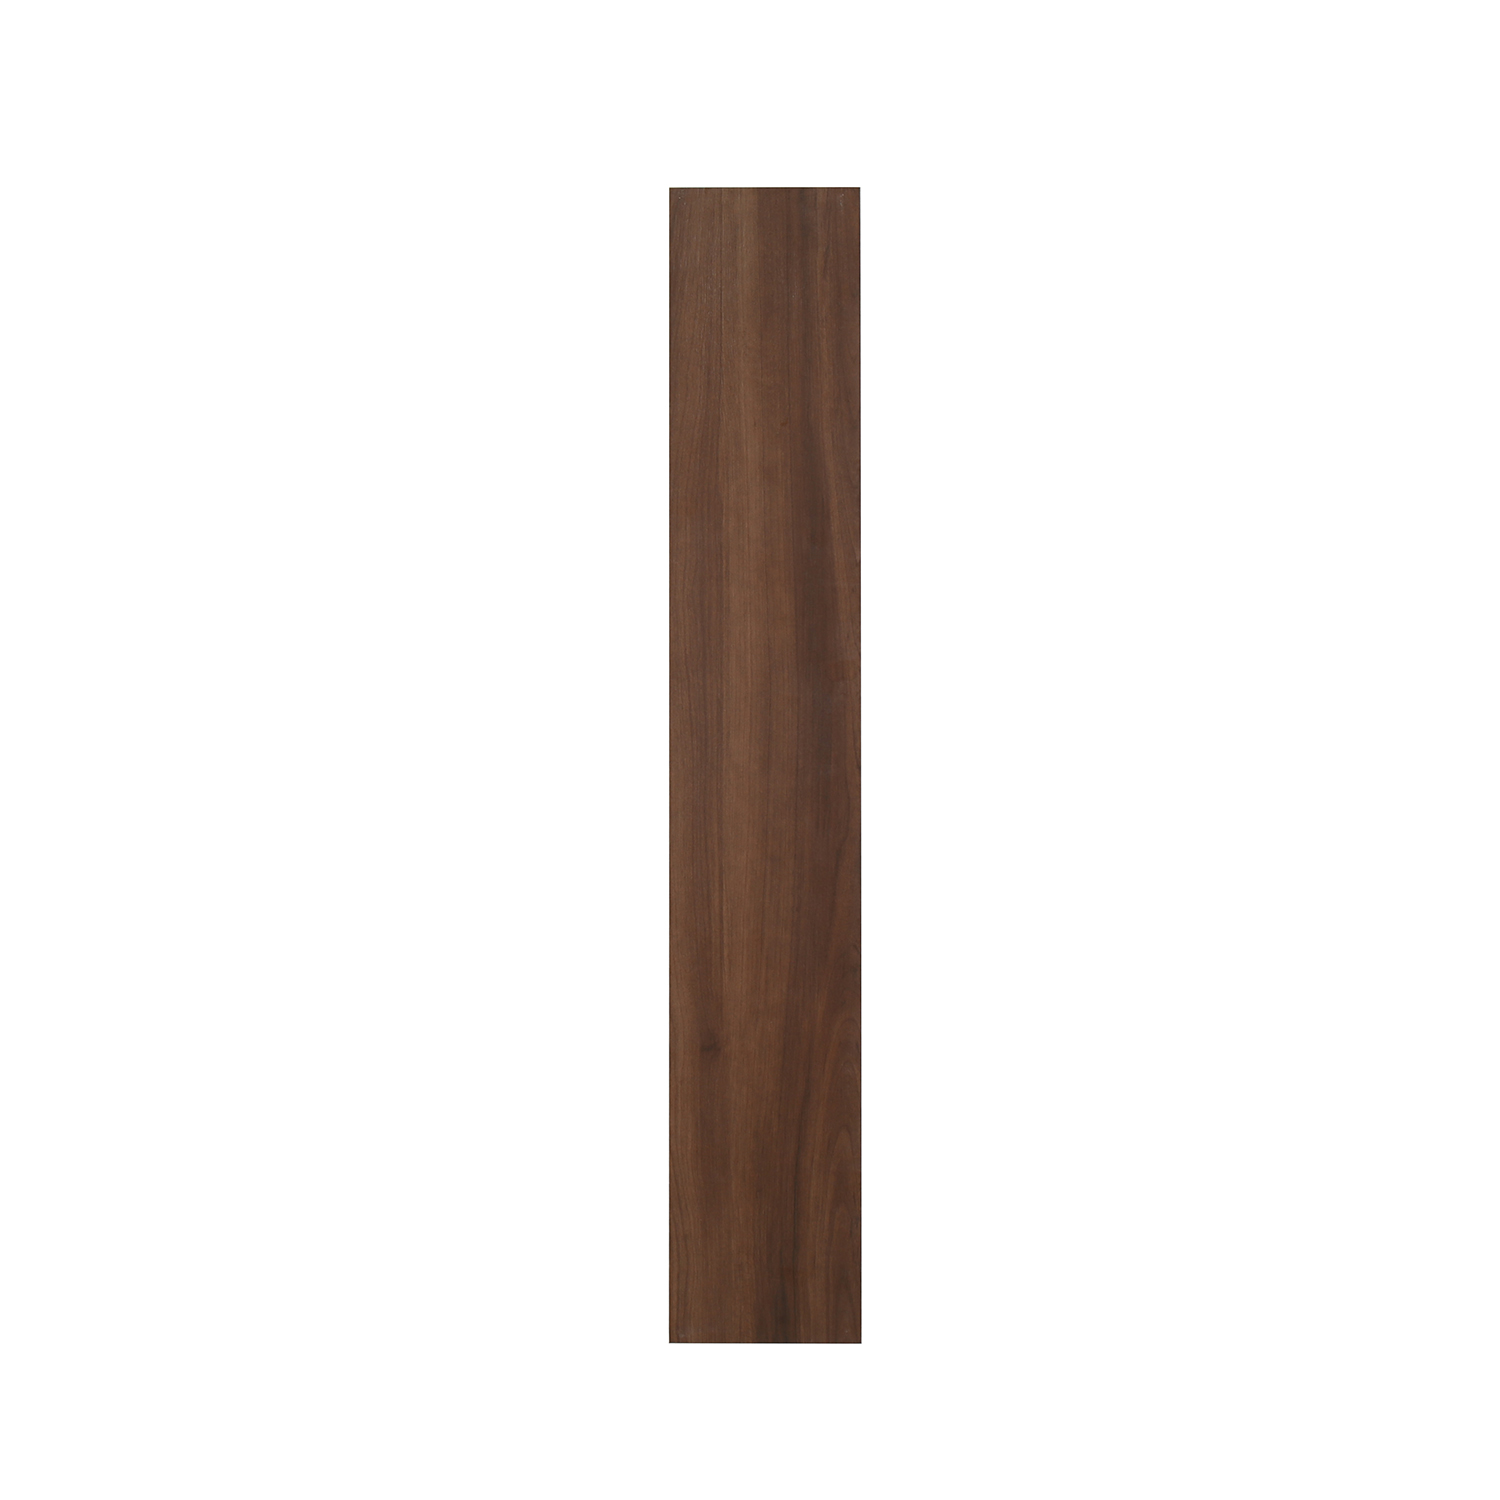 3D Inkjet Like Natural wood looks wooden floor tiles-AJ915102M-150x900